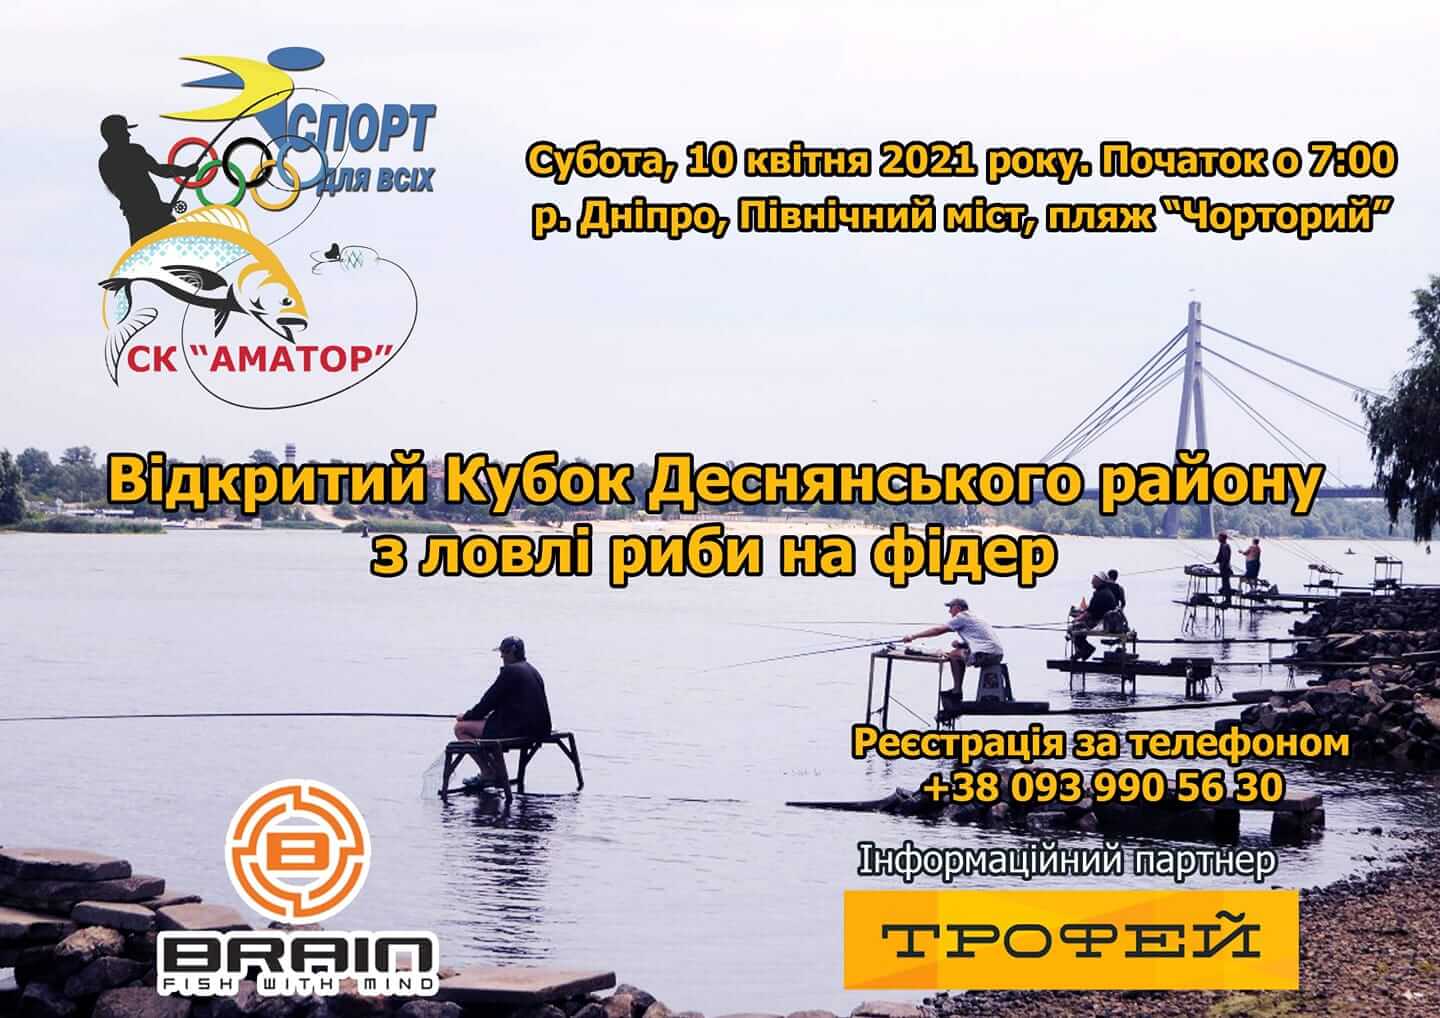 Відритий Кубок Деснянского району з ловлі риби на фідер